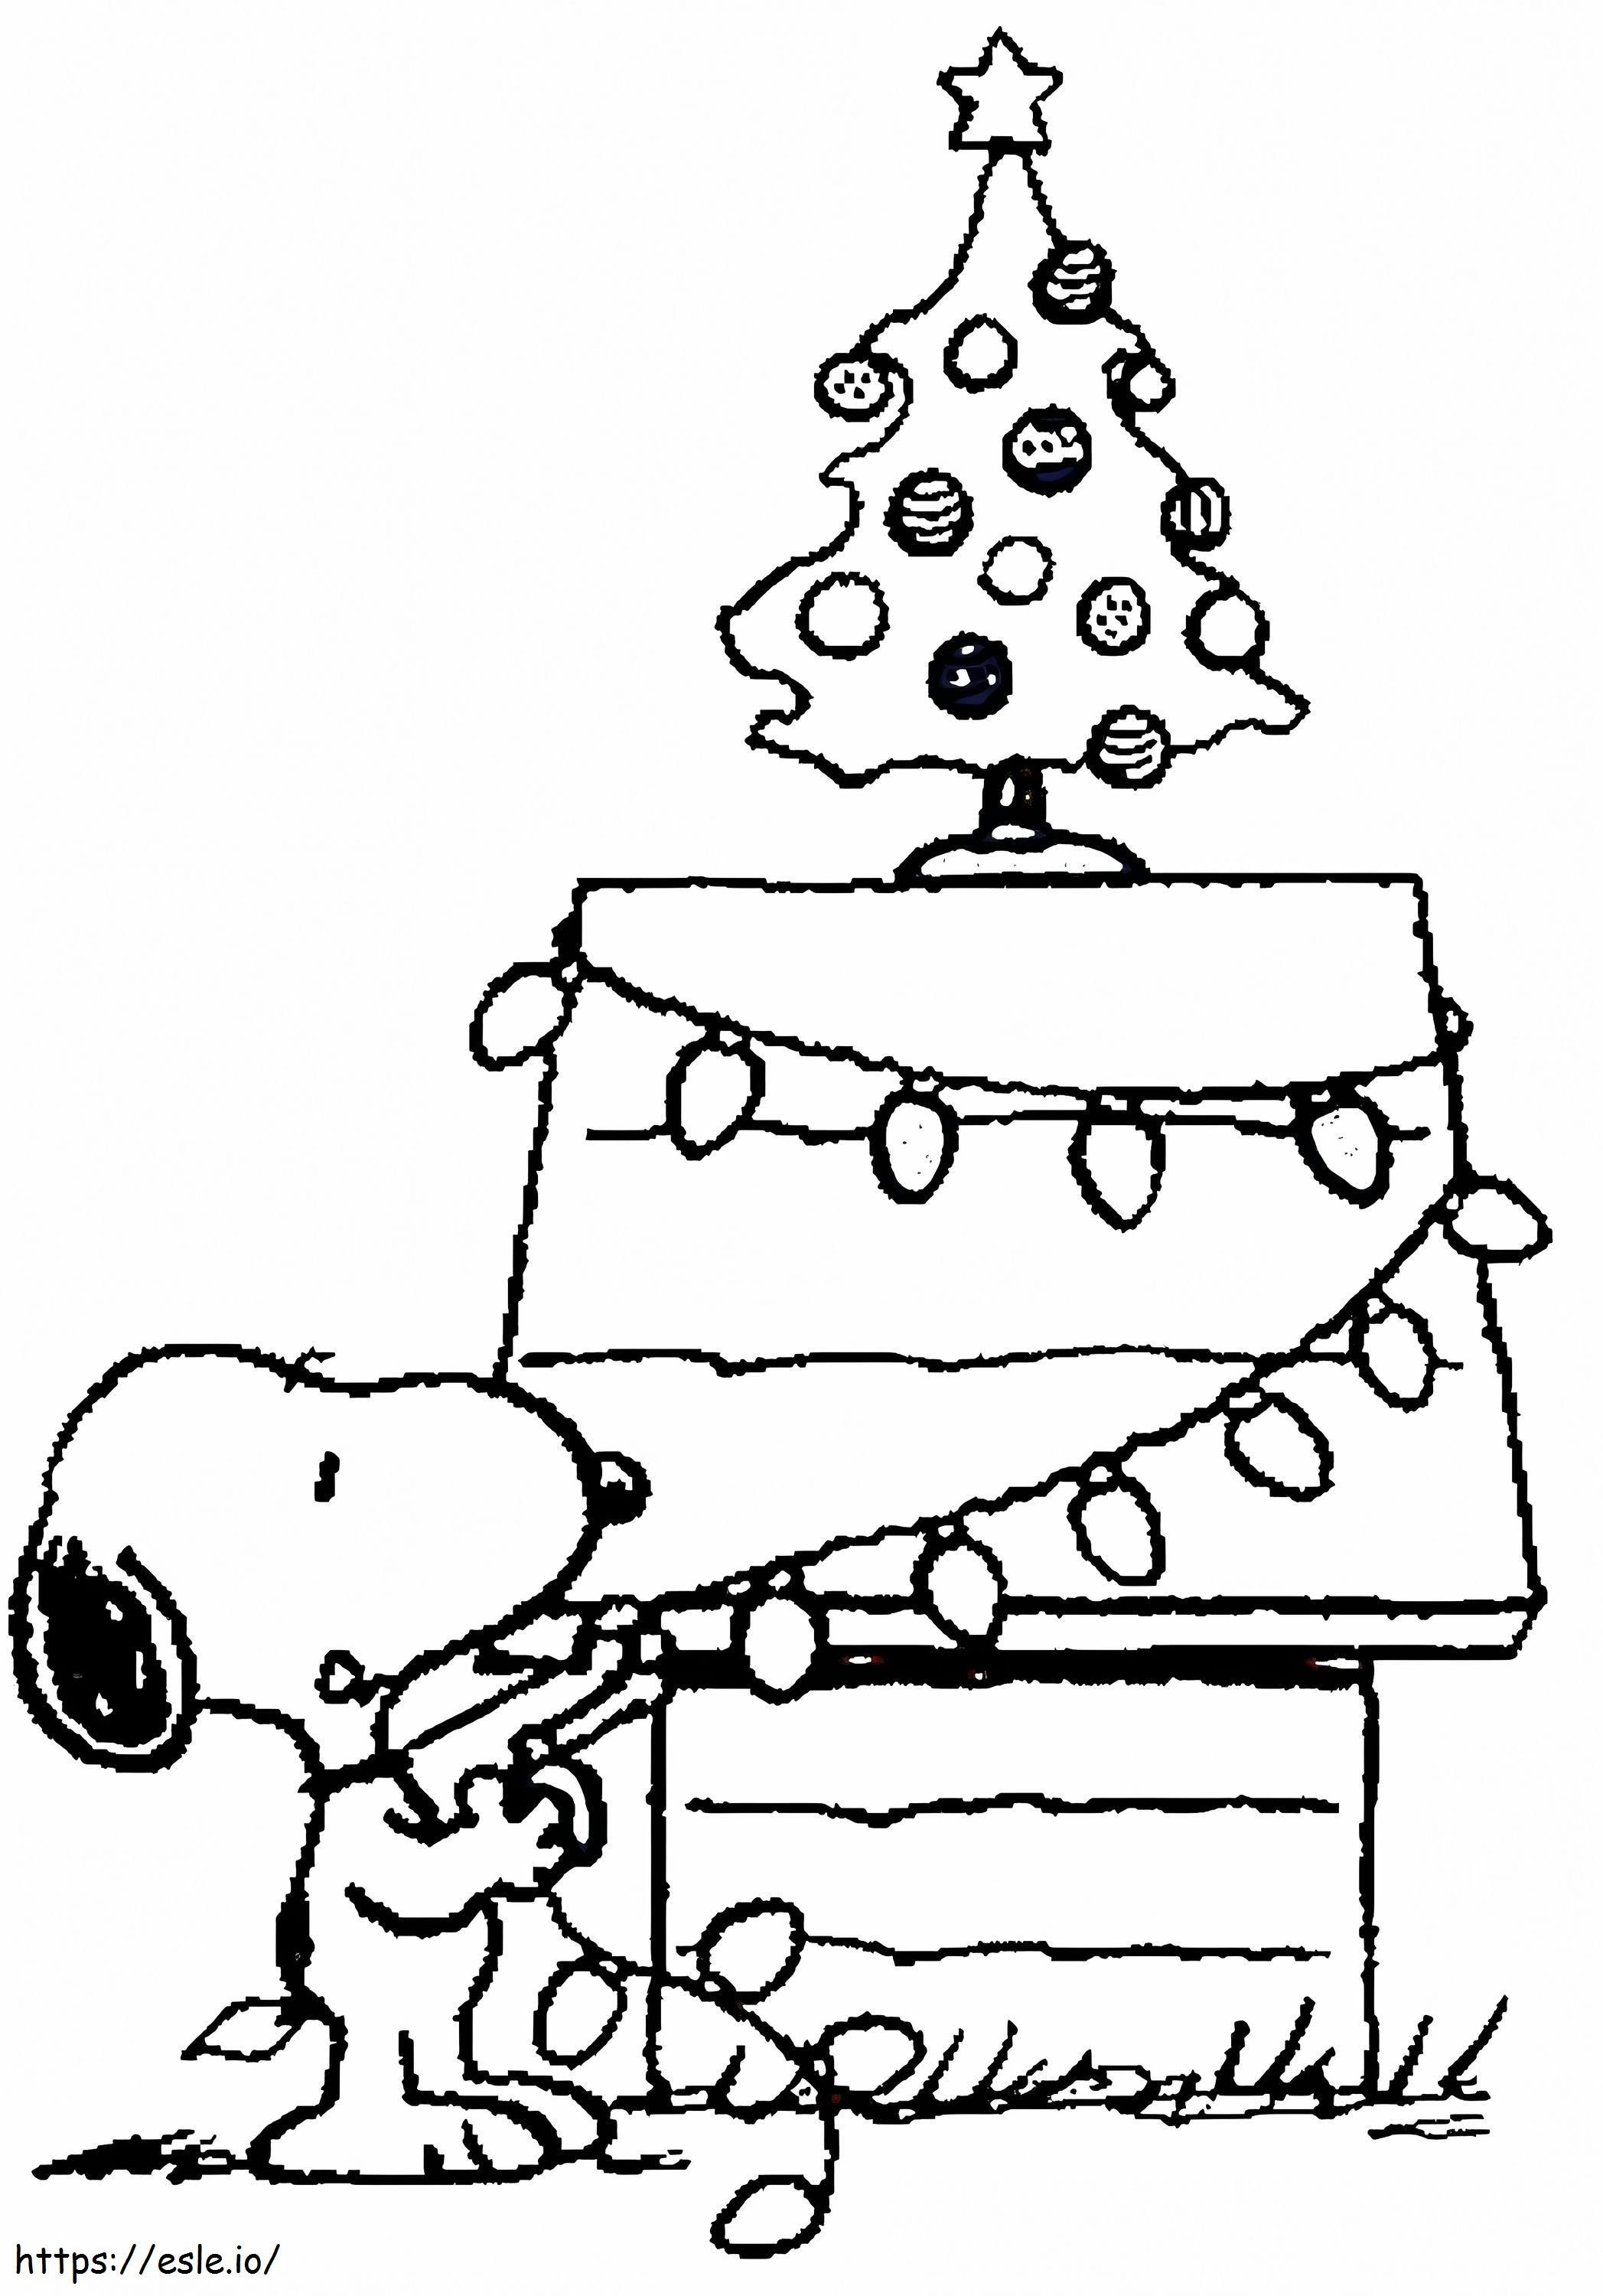 1539418638 Árvore de Natal do Snoopy para colorir